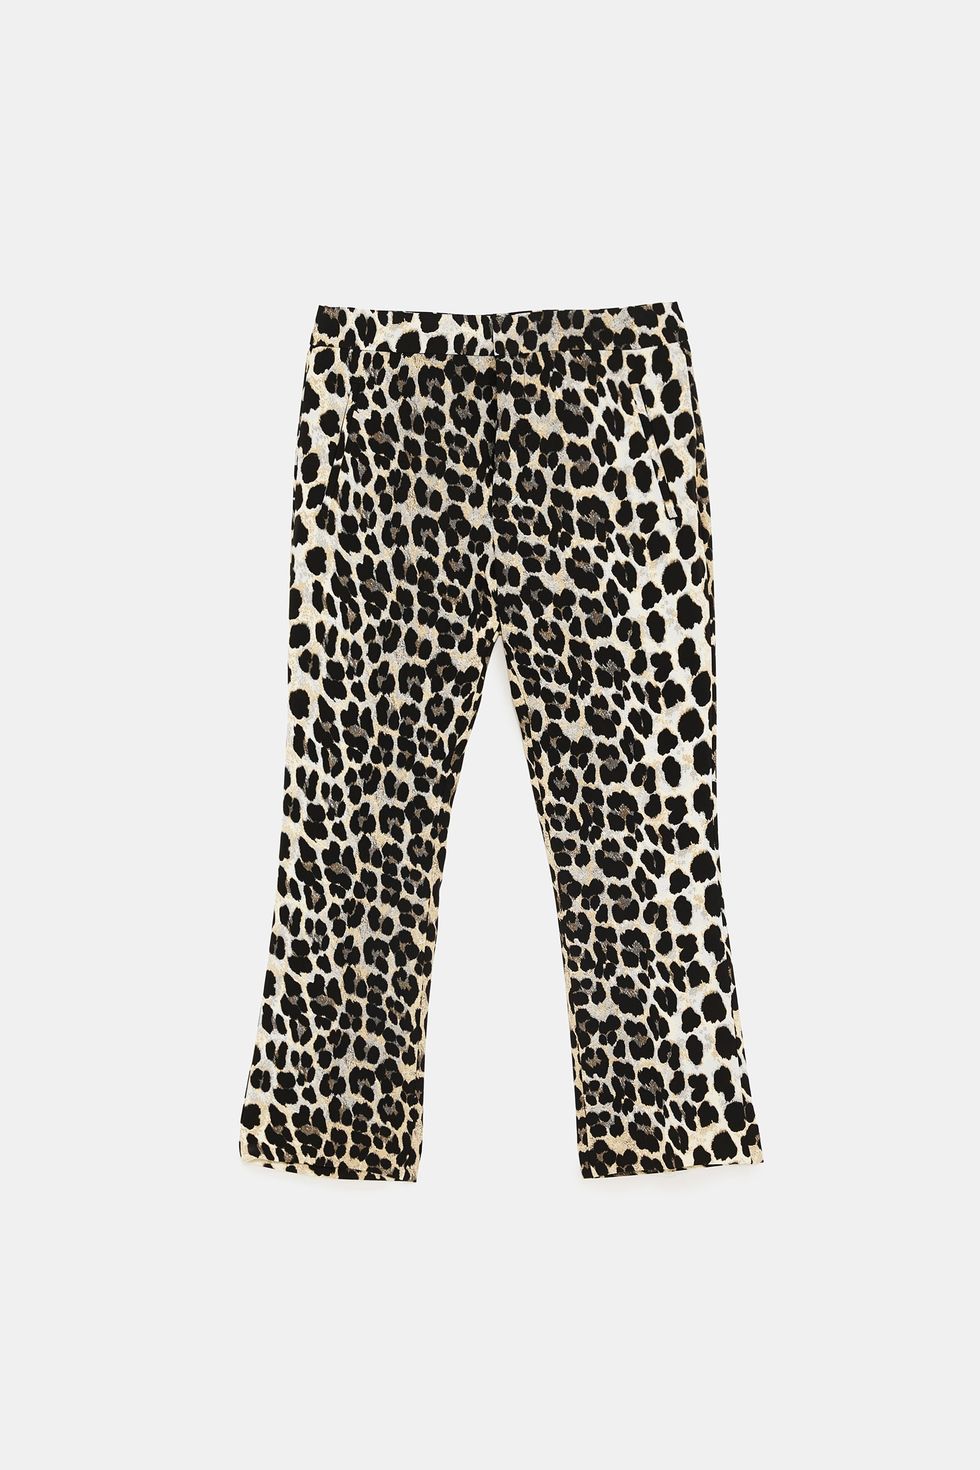 Sara Carbonero lleva ya un look con medias, y le visten más que unos  pantalones - Sara Carbonero con medias de leopardo de Calzedonia